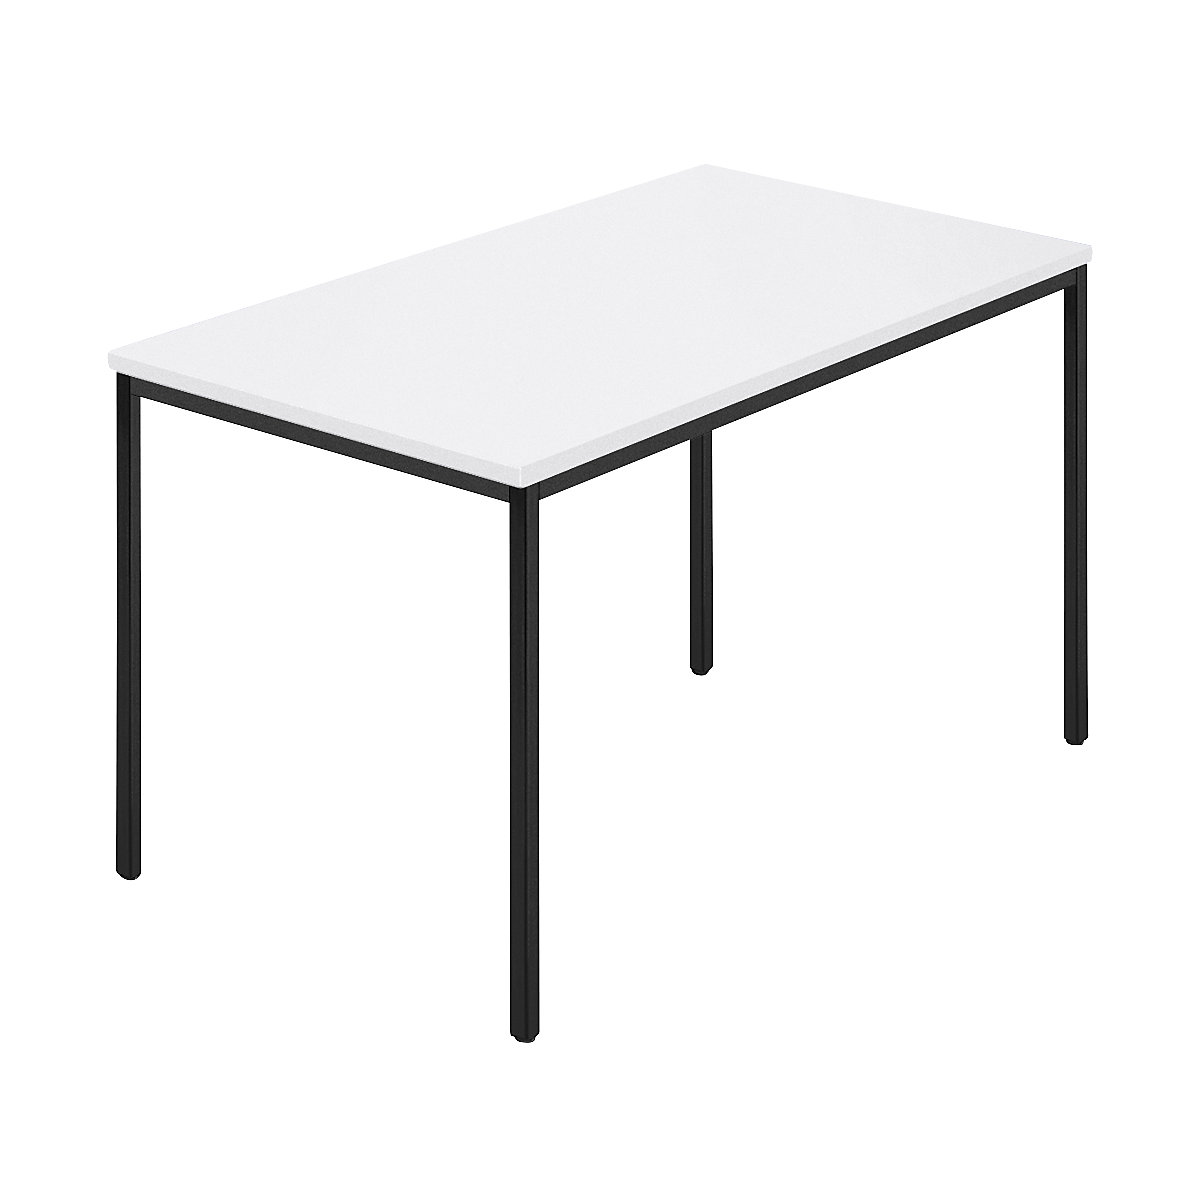 Table rectangulaire, tube carré plastifié, l x p 1200 x 800 mm, blanc / anthracite-6